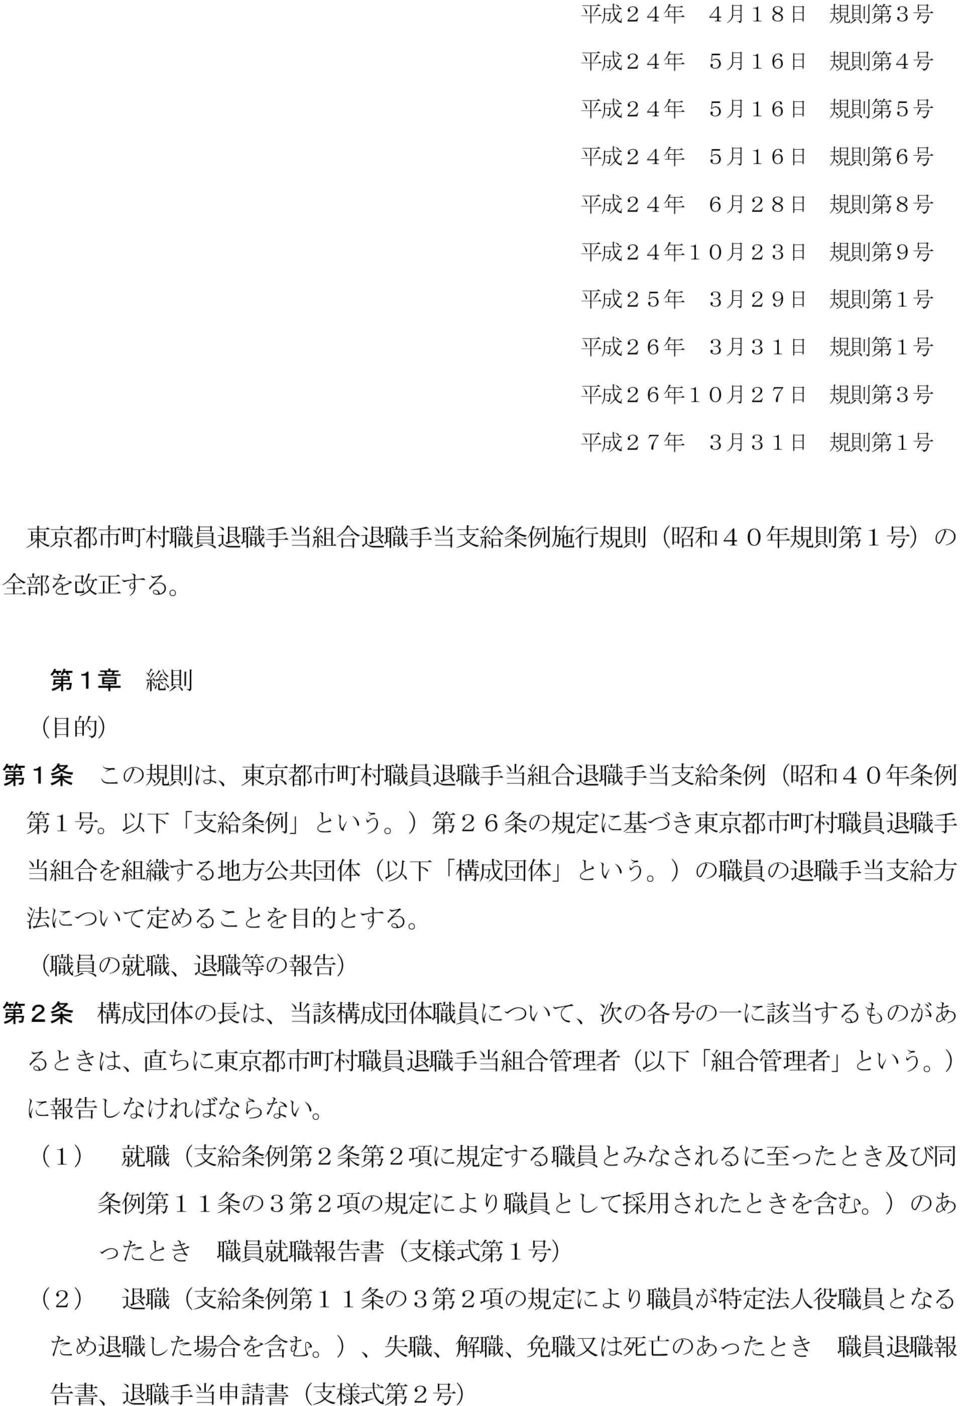 規 則 は 東 京 都 市 町 村 職 員 退 職 手 当 組 合 退 職 手 当 支 給 条 例 ( 昭 和 40 年 条 例 第 1 号 以 下 支 給 条 例 という ) 第 26 条 の 規 定 に 基 づき 東 京 都 市 町 村 職 員 退 職 手 当 組 合 を 組 織 する 地 方 公 共 団 体 ( 以 下 構 成 団 体 という )の 職 員 の 退 職 手 当 支 給 方